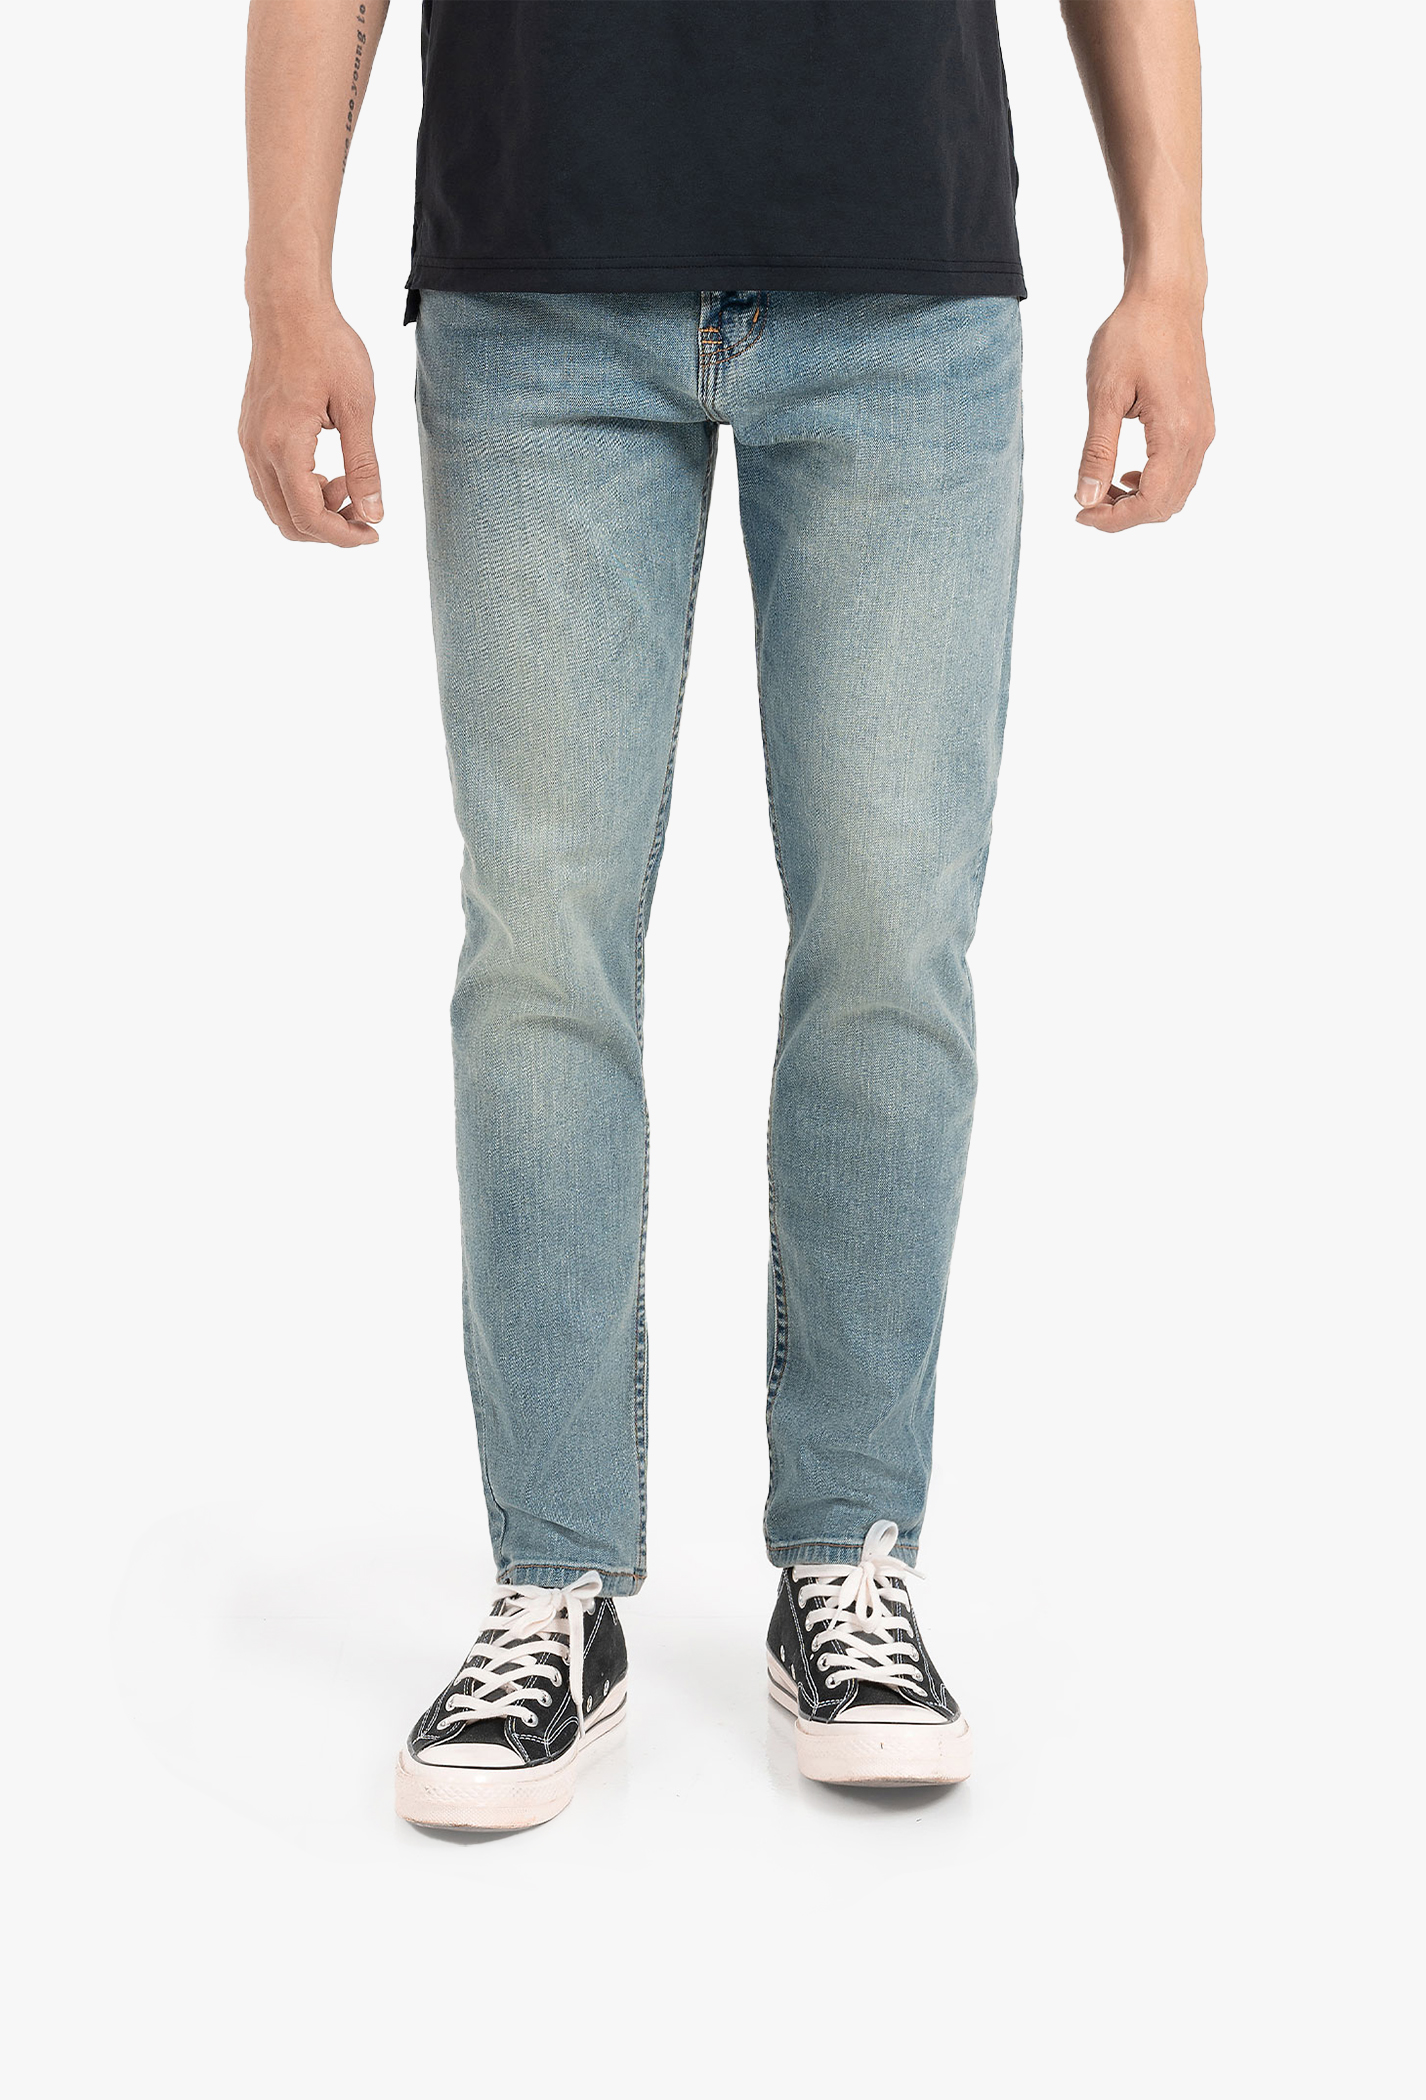 quan-jeans-nam-basic-slim